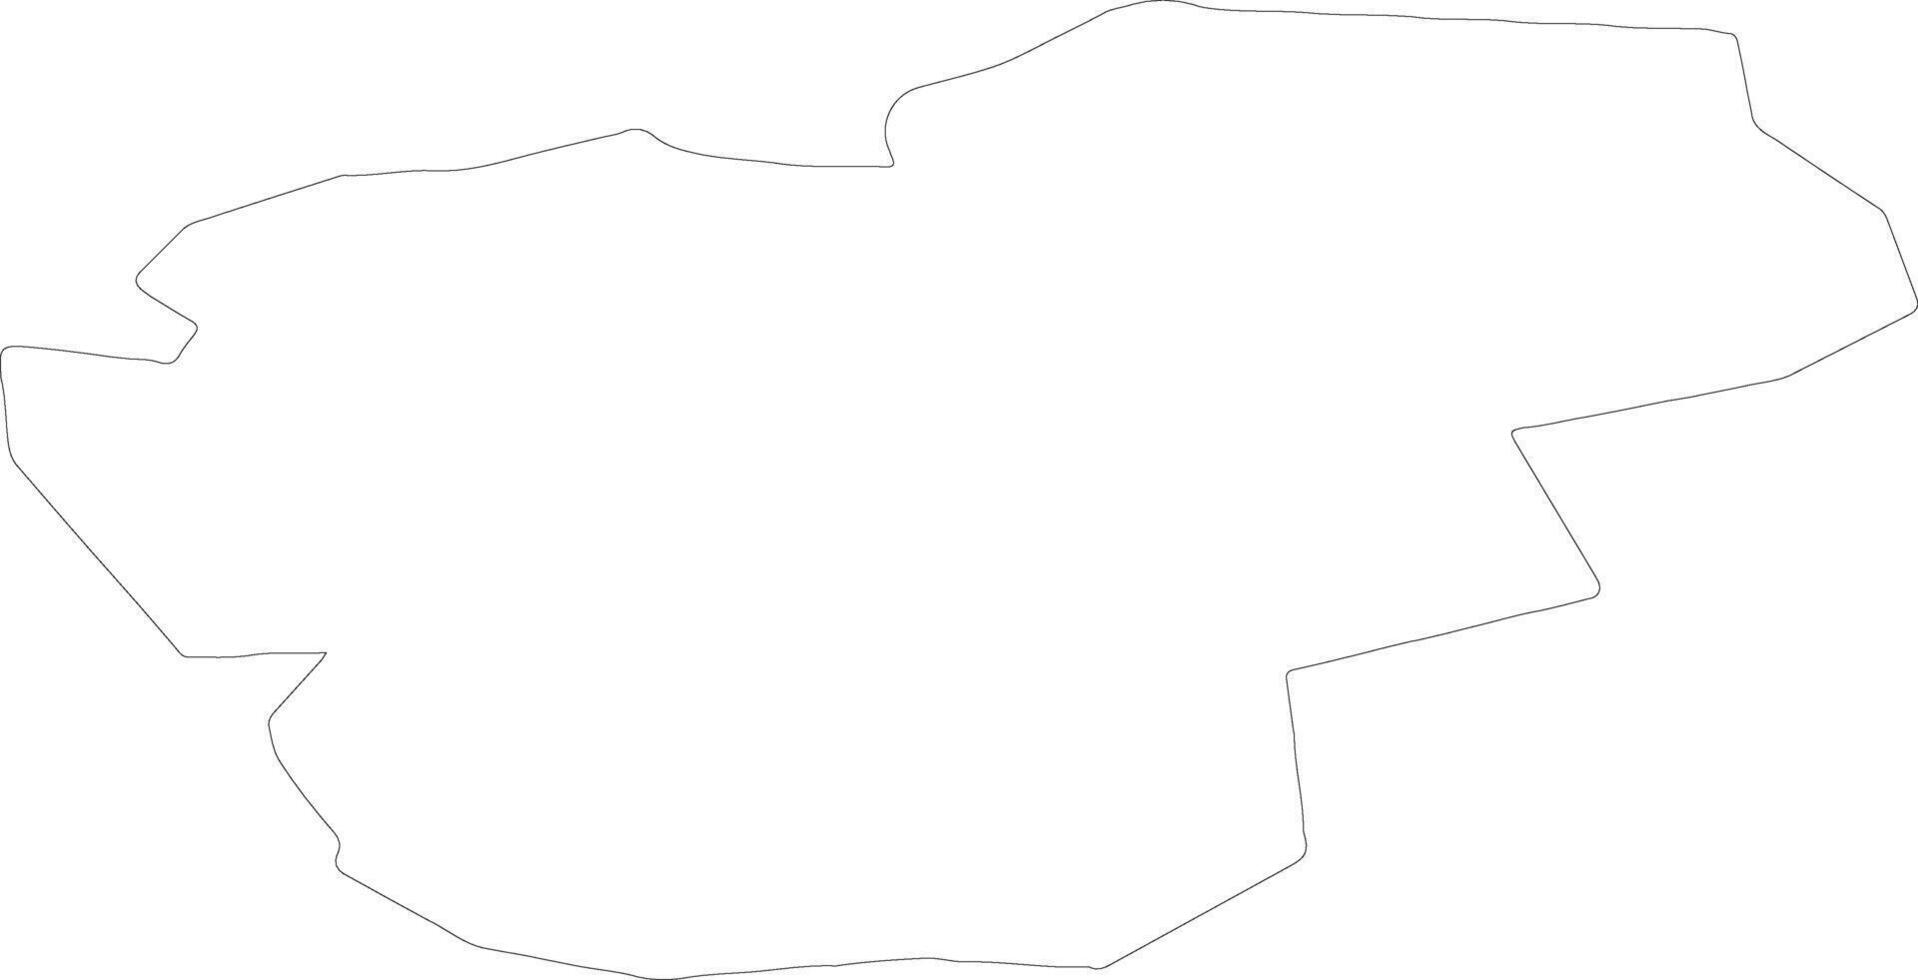 aglonas lettland översikt Karta vektor